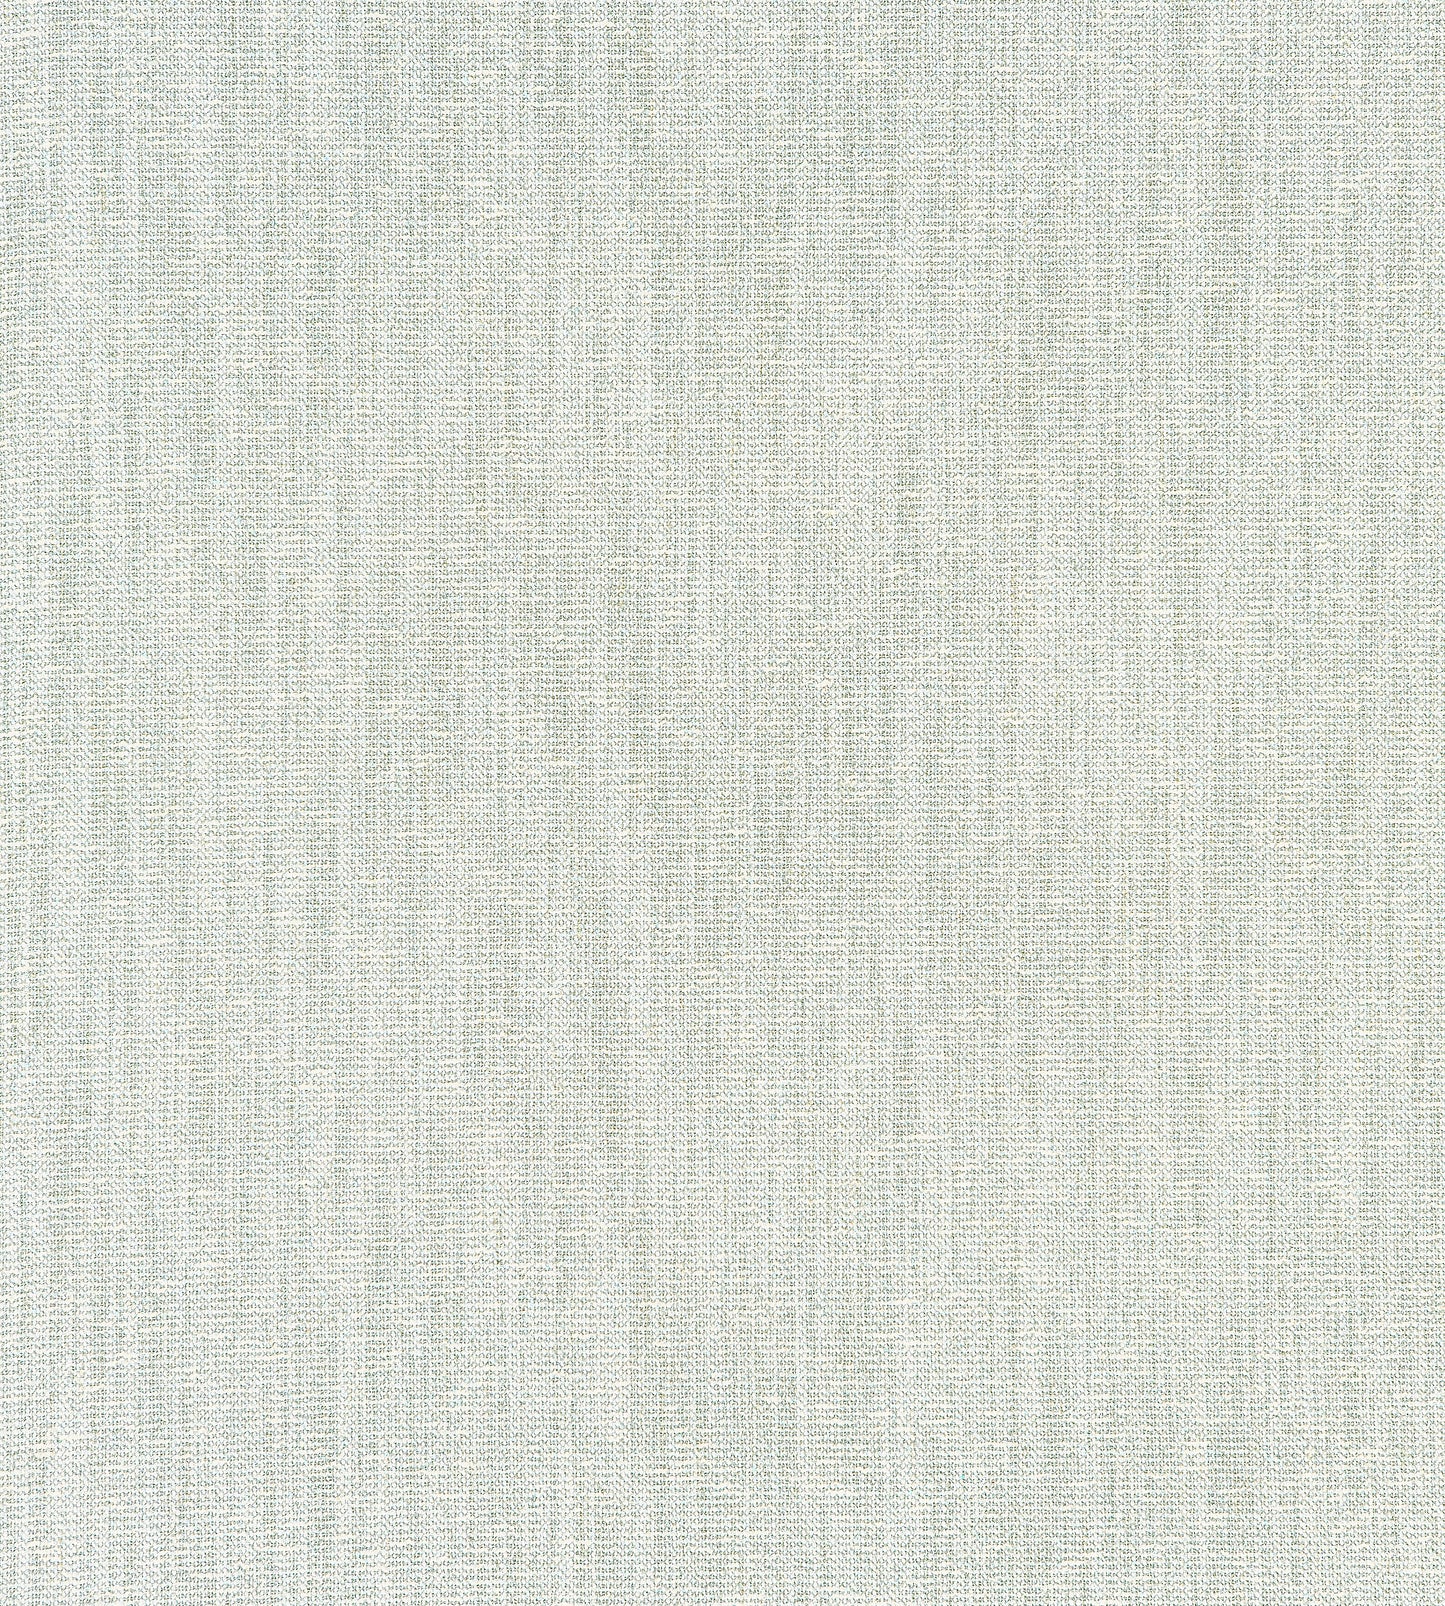 Purchase Scalamandre Fabric Pattern# SC 000227240, Haiku Weave Mist 2